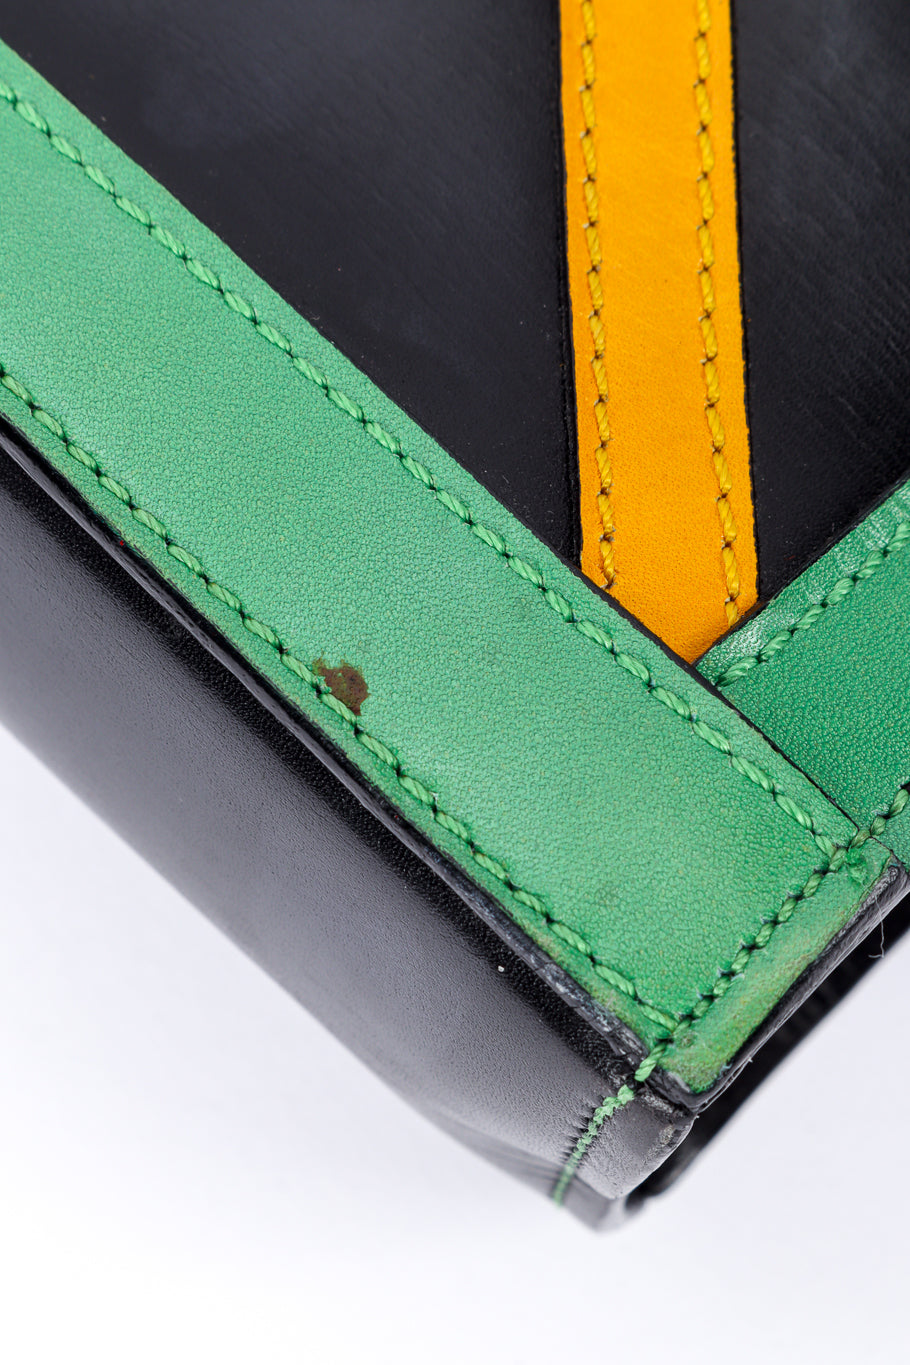 Vintage Celine Leather Strip Tote Bag mark at bottom @recessla